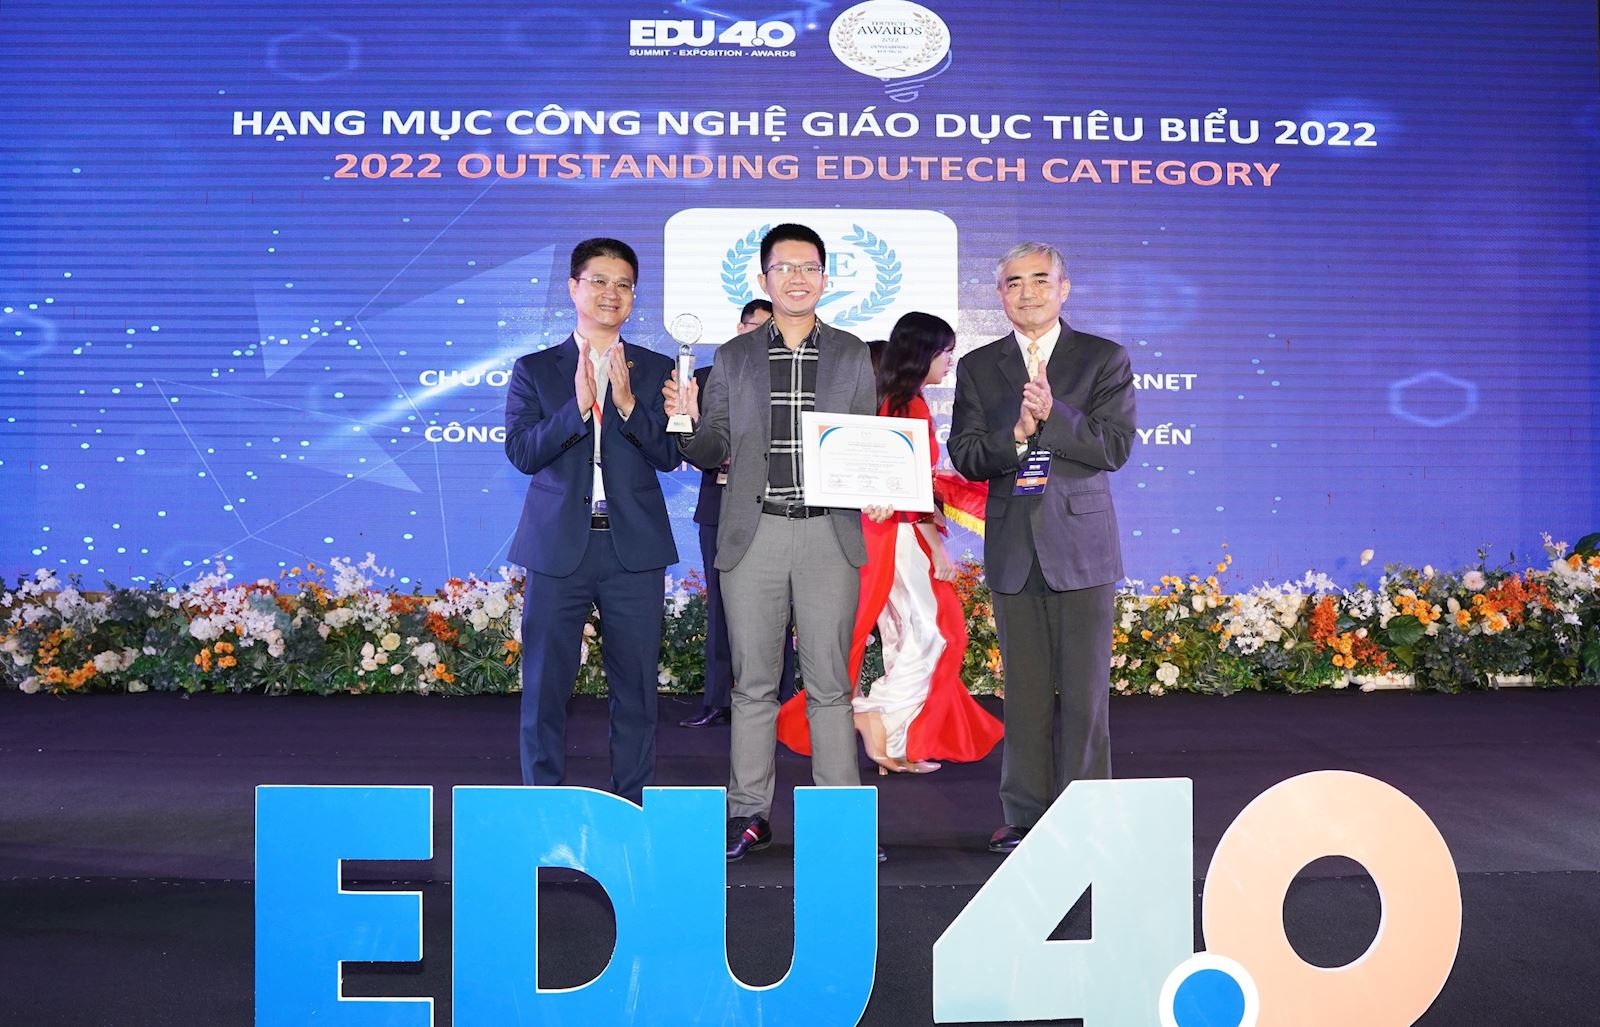 EDUTECH AWARDS 2022 - IOE nhận Giải thưởng Công nghệ Giáo dục tiêu biểu 2022 